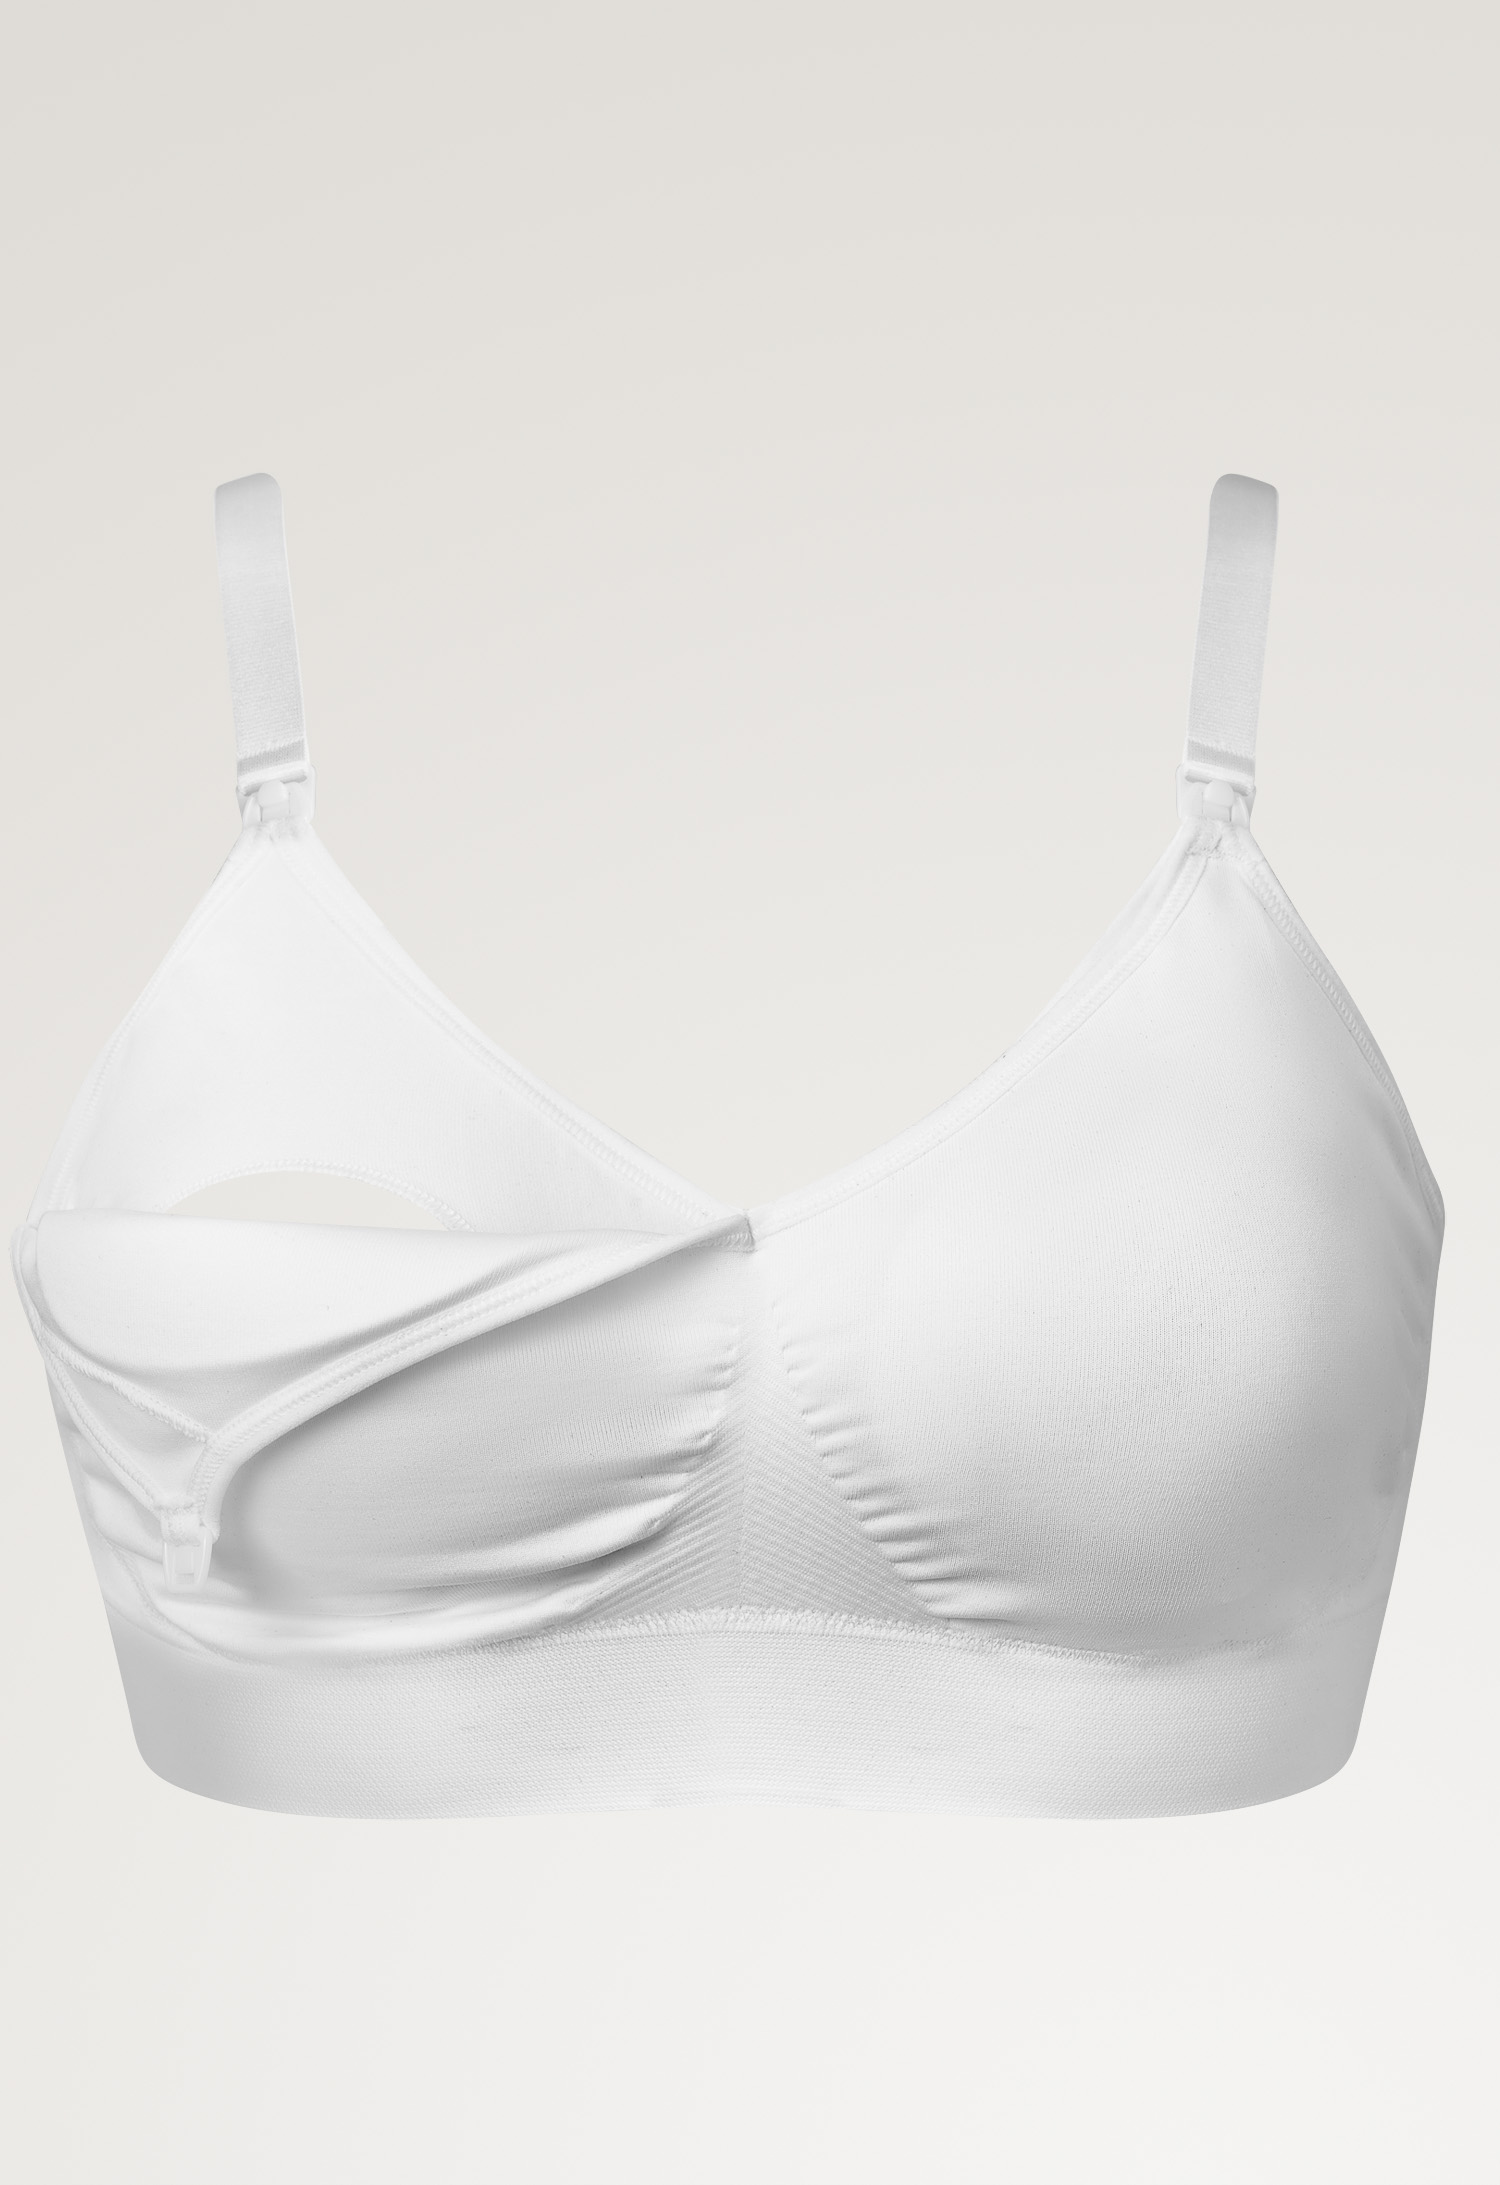 Fast Food T-shirt bra , White M (5) - Maternity underwear / Nursing underwear